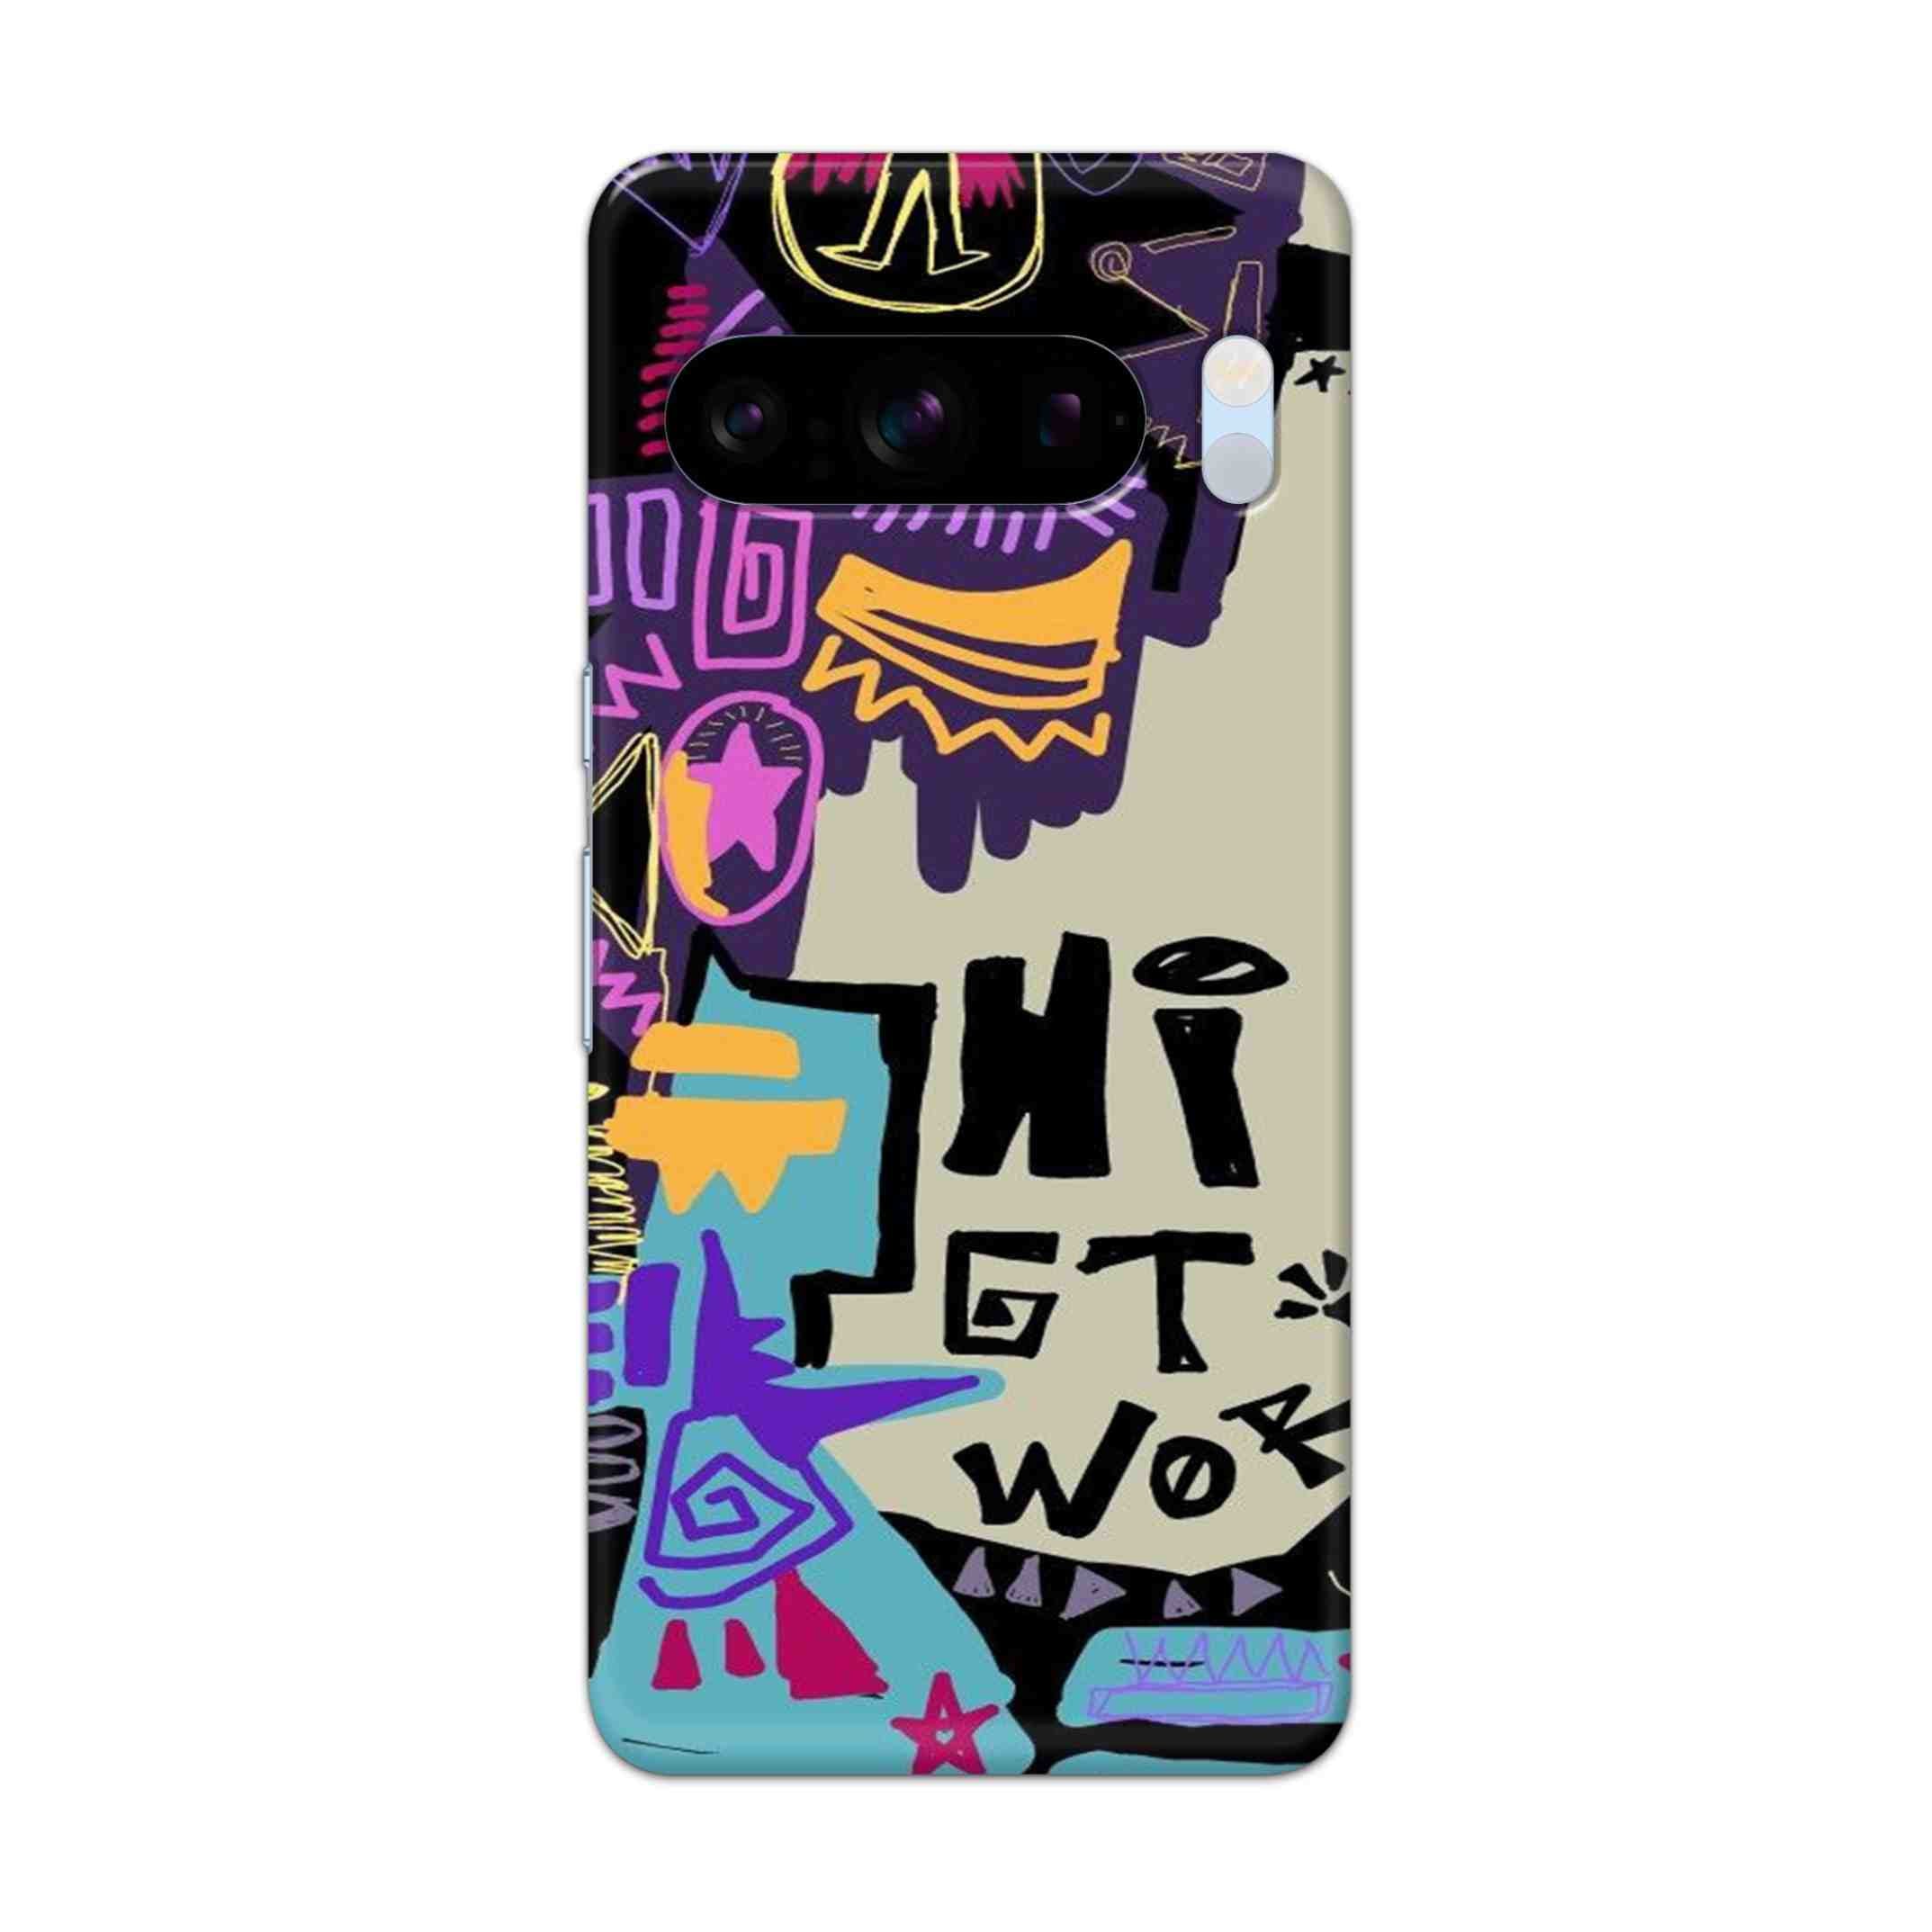 Buy Hi Gt World Hard Back Mobile Phone Case/Cover For Pixel 8 Pro Online